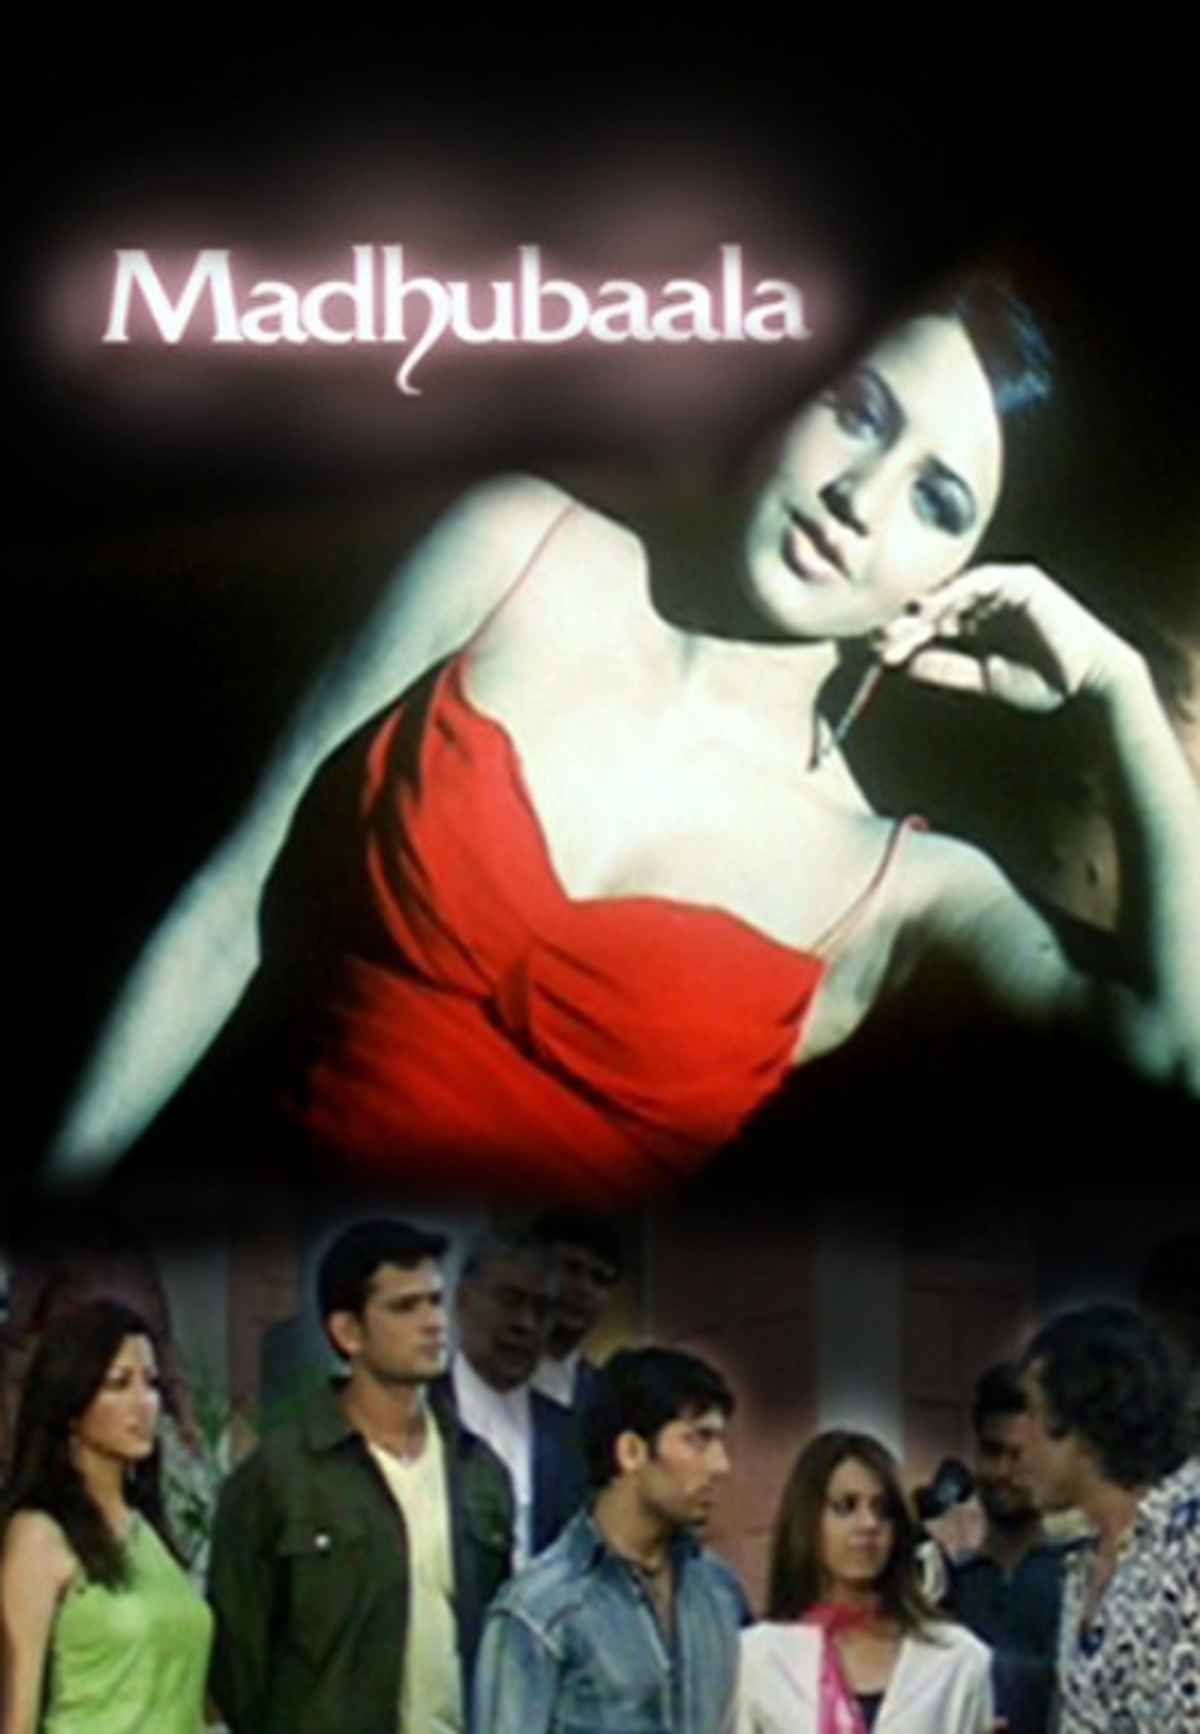 Madhubaala